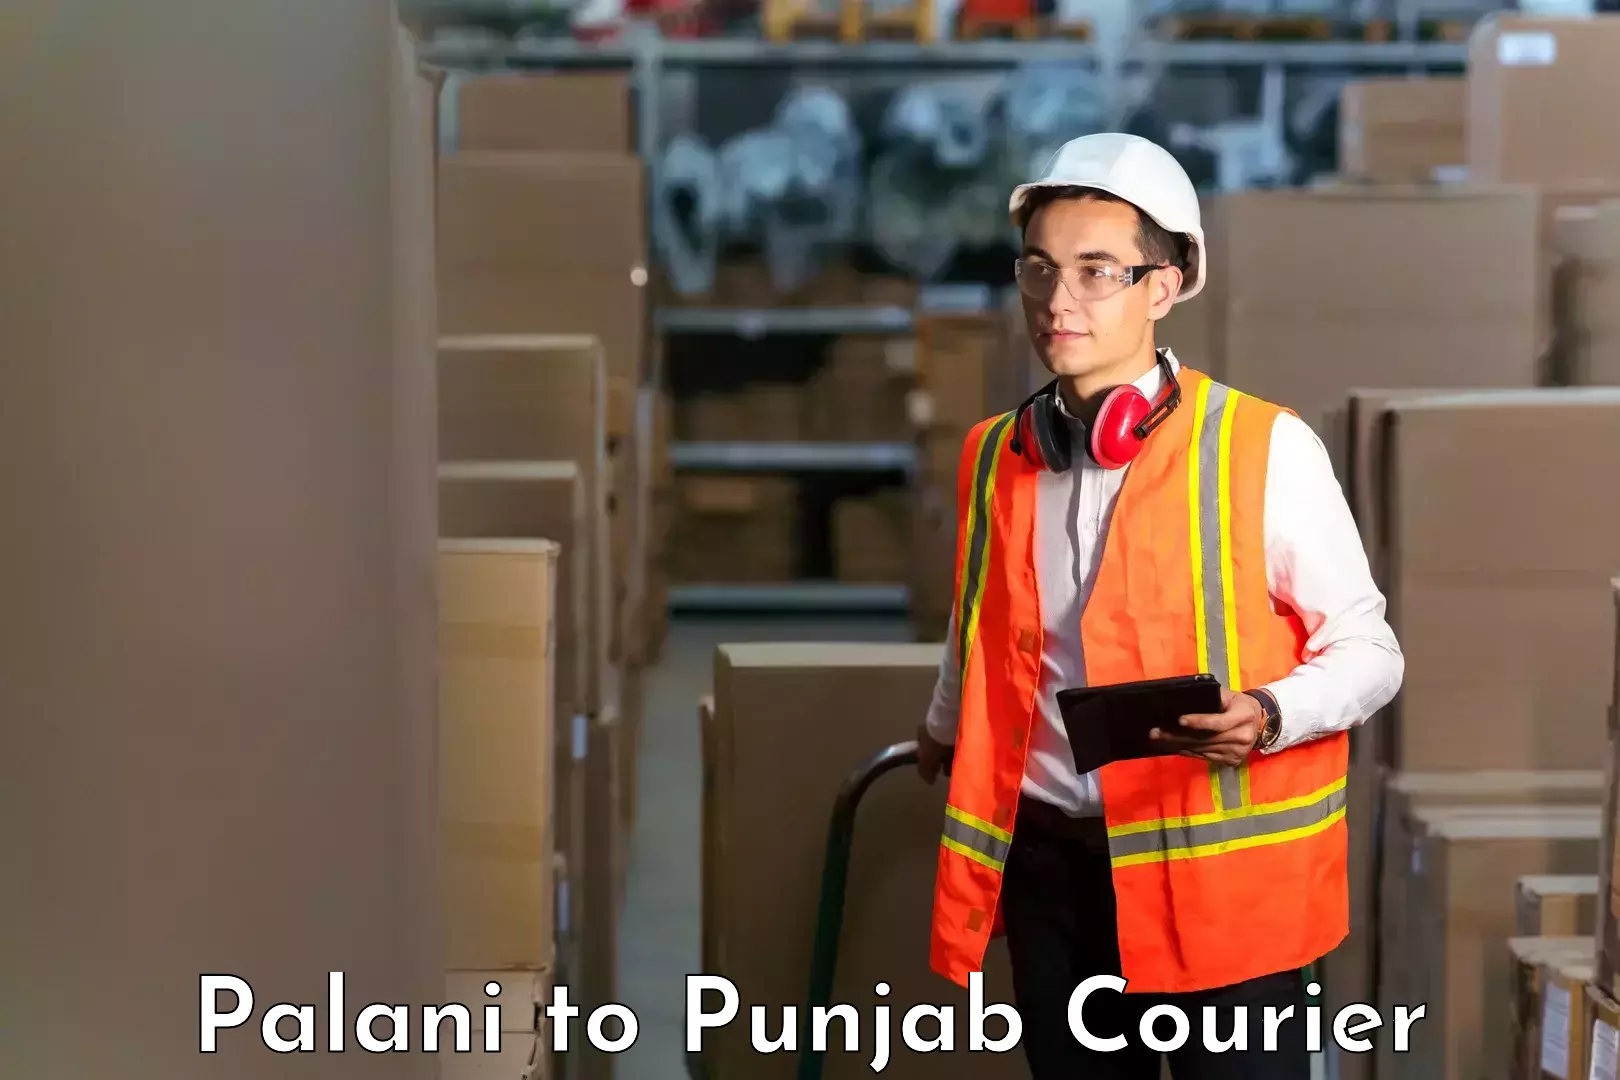 Business shipping needs Palani to Malout